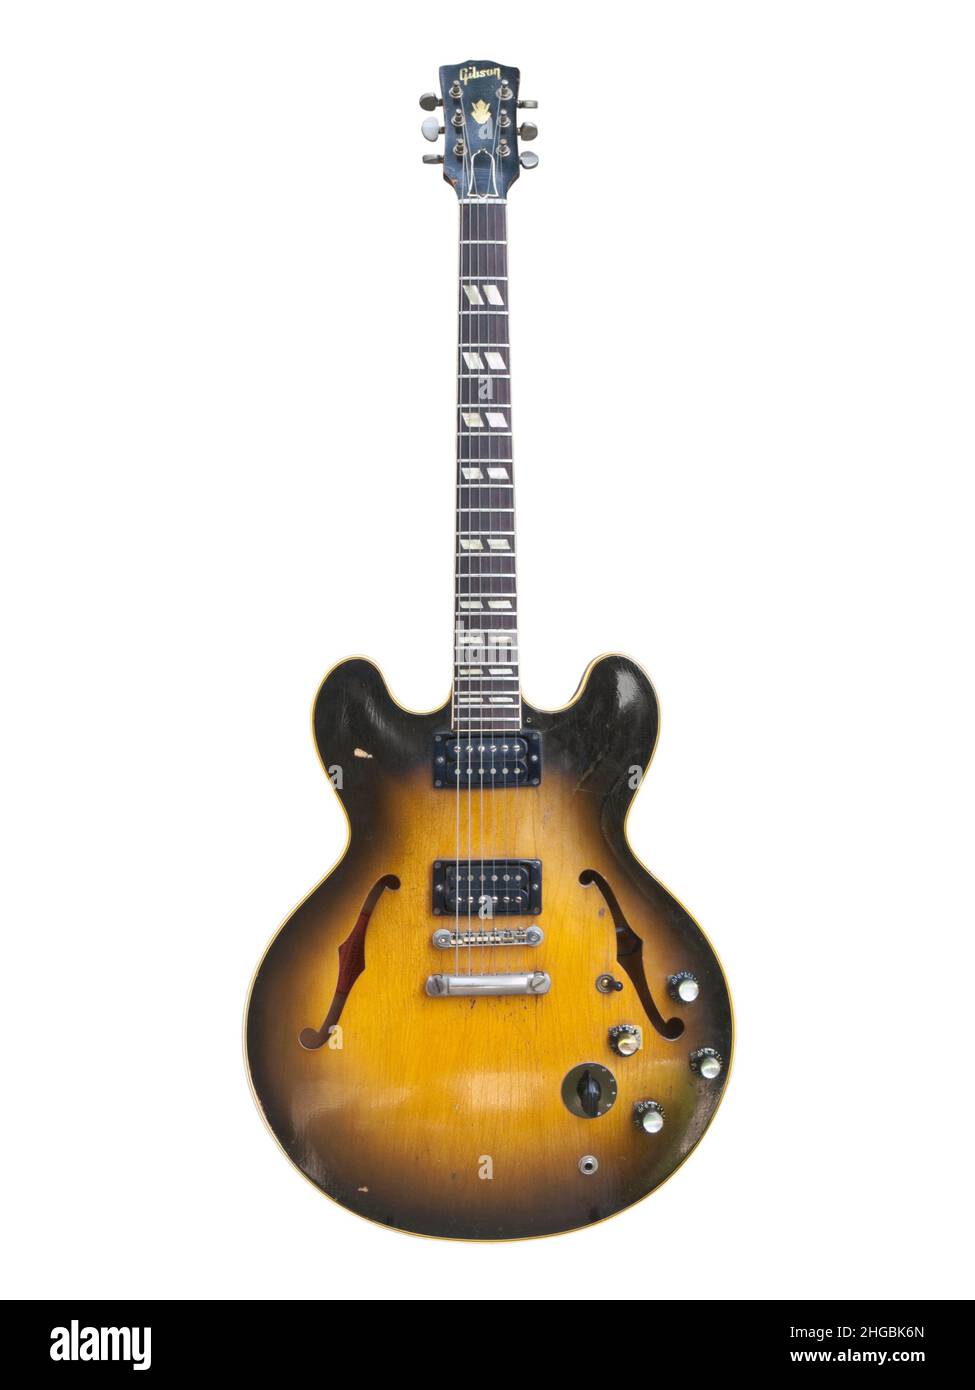 Foto editorial ilustrativa de una guitarra eléctrica de cuerpo hueco 1959 Gibson ES 335 con fondo blanco el 26 de julio de 2009 en Los Angeles, CA. Foto de stock